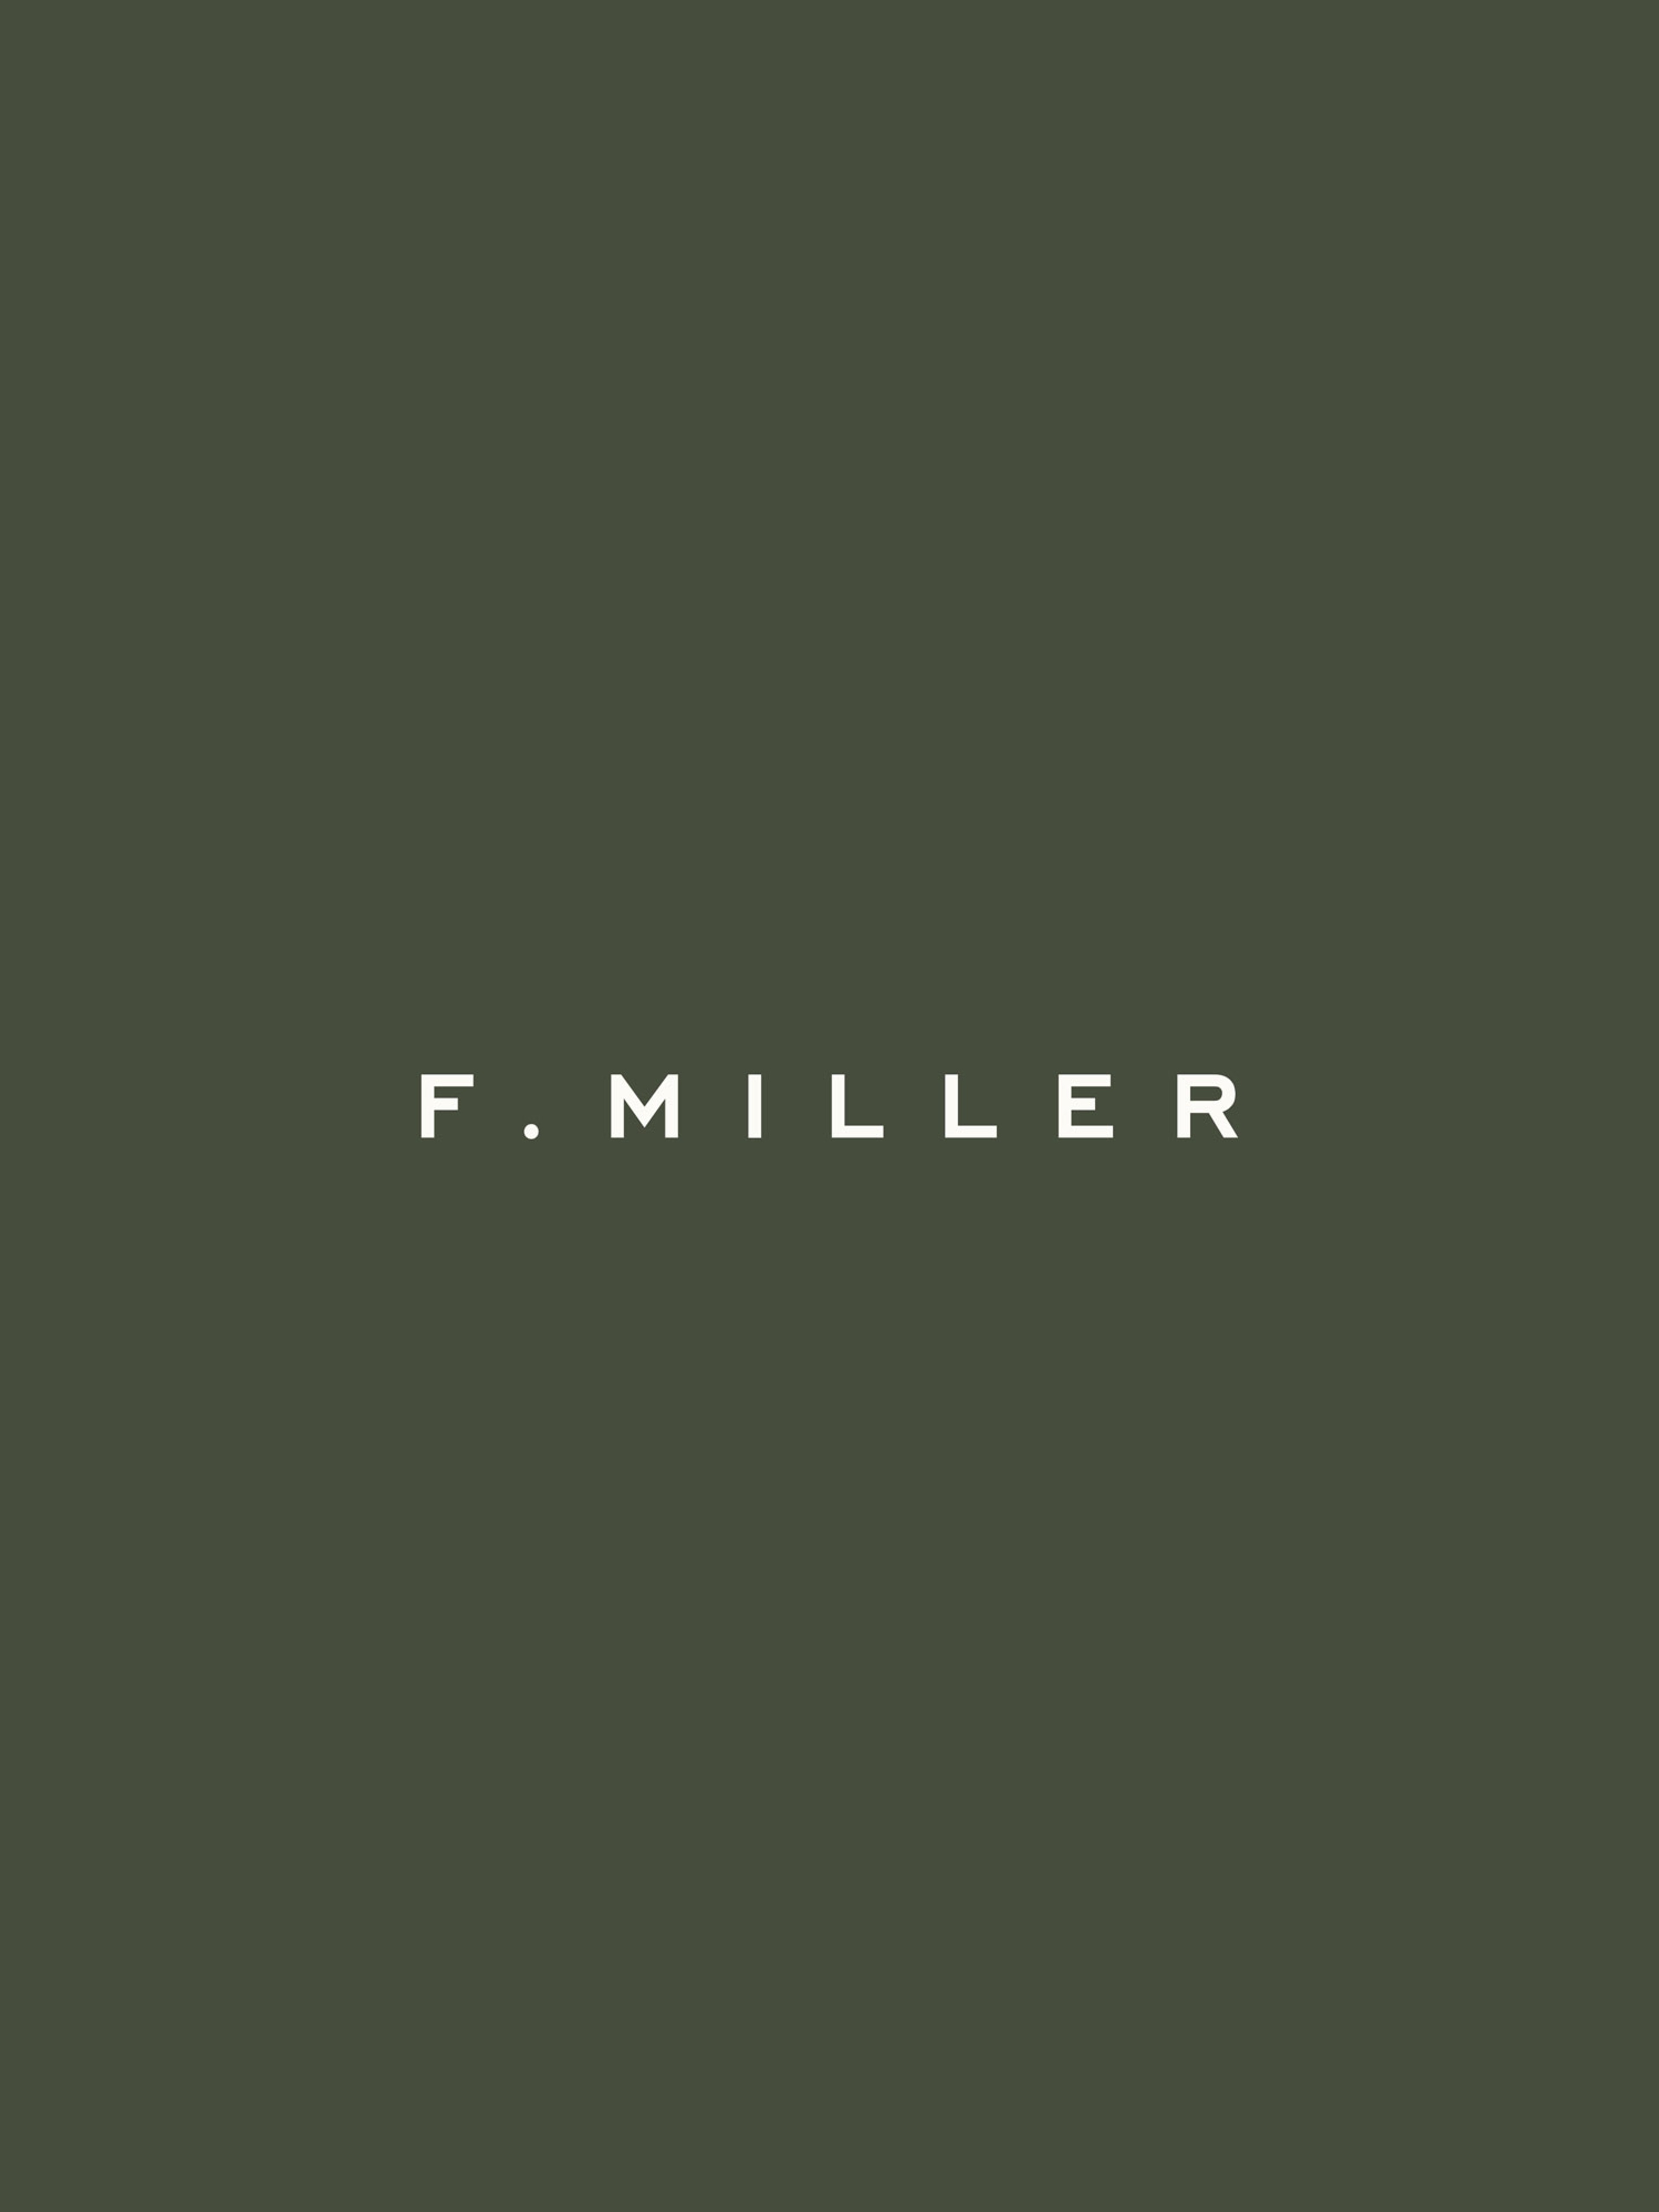 F. Miller Logotype